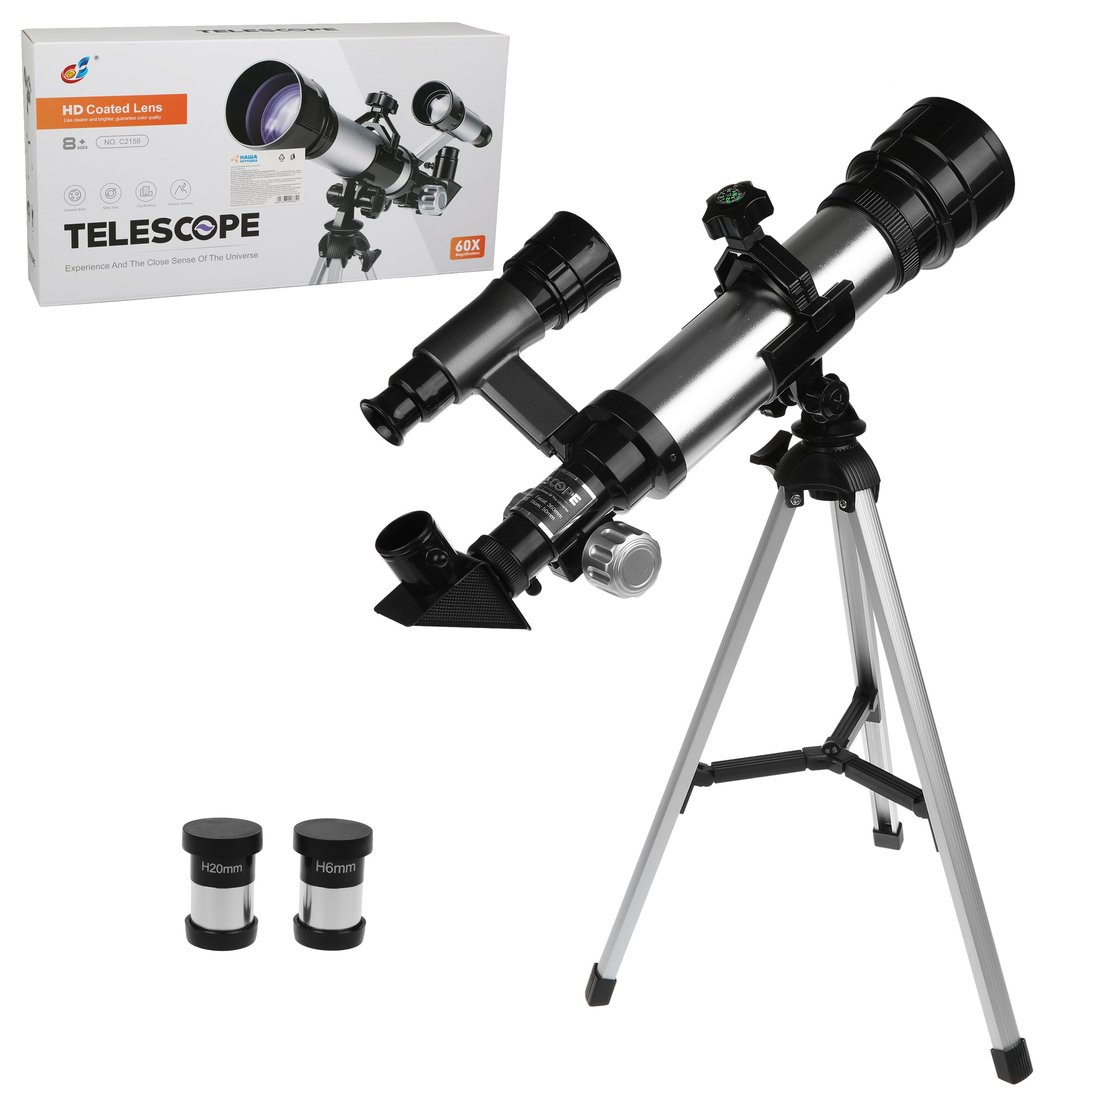 Телескоп детский Наша Игрушка 60х увеличение, 3 объектива арт. 800664 крышка для объектива betwix solc 58 snap on lens cap